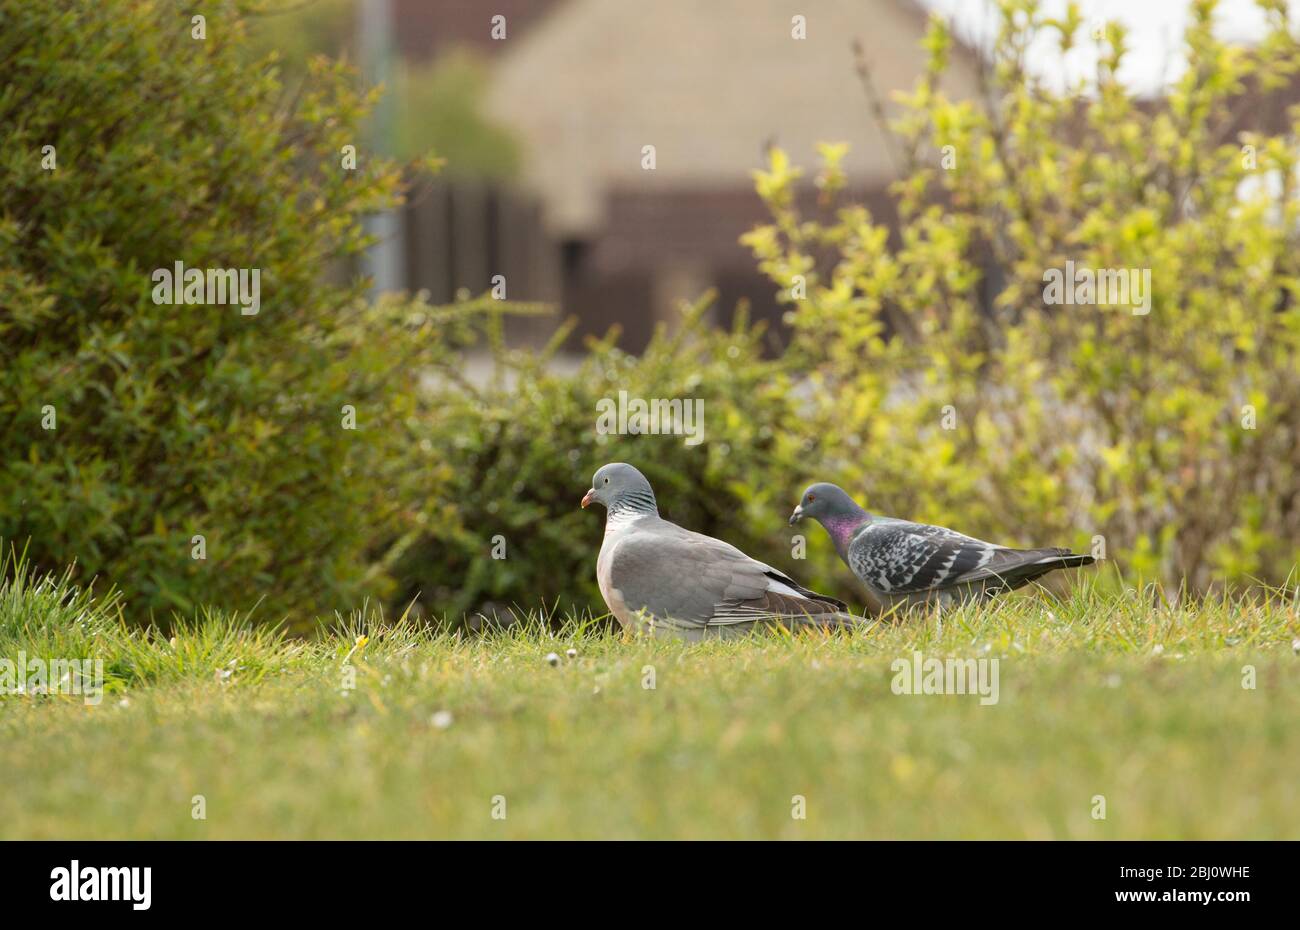 Un piccione di legno, Columba palumbus sulla sinistra, accanto ad un piccione ferale sulla destra, nutrendo su un prato suburbano. Dorset England GB Foto Stock